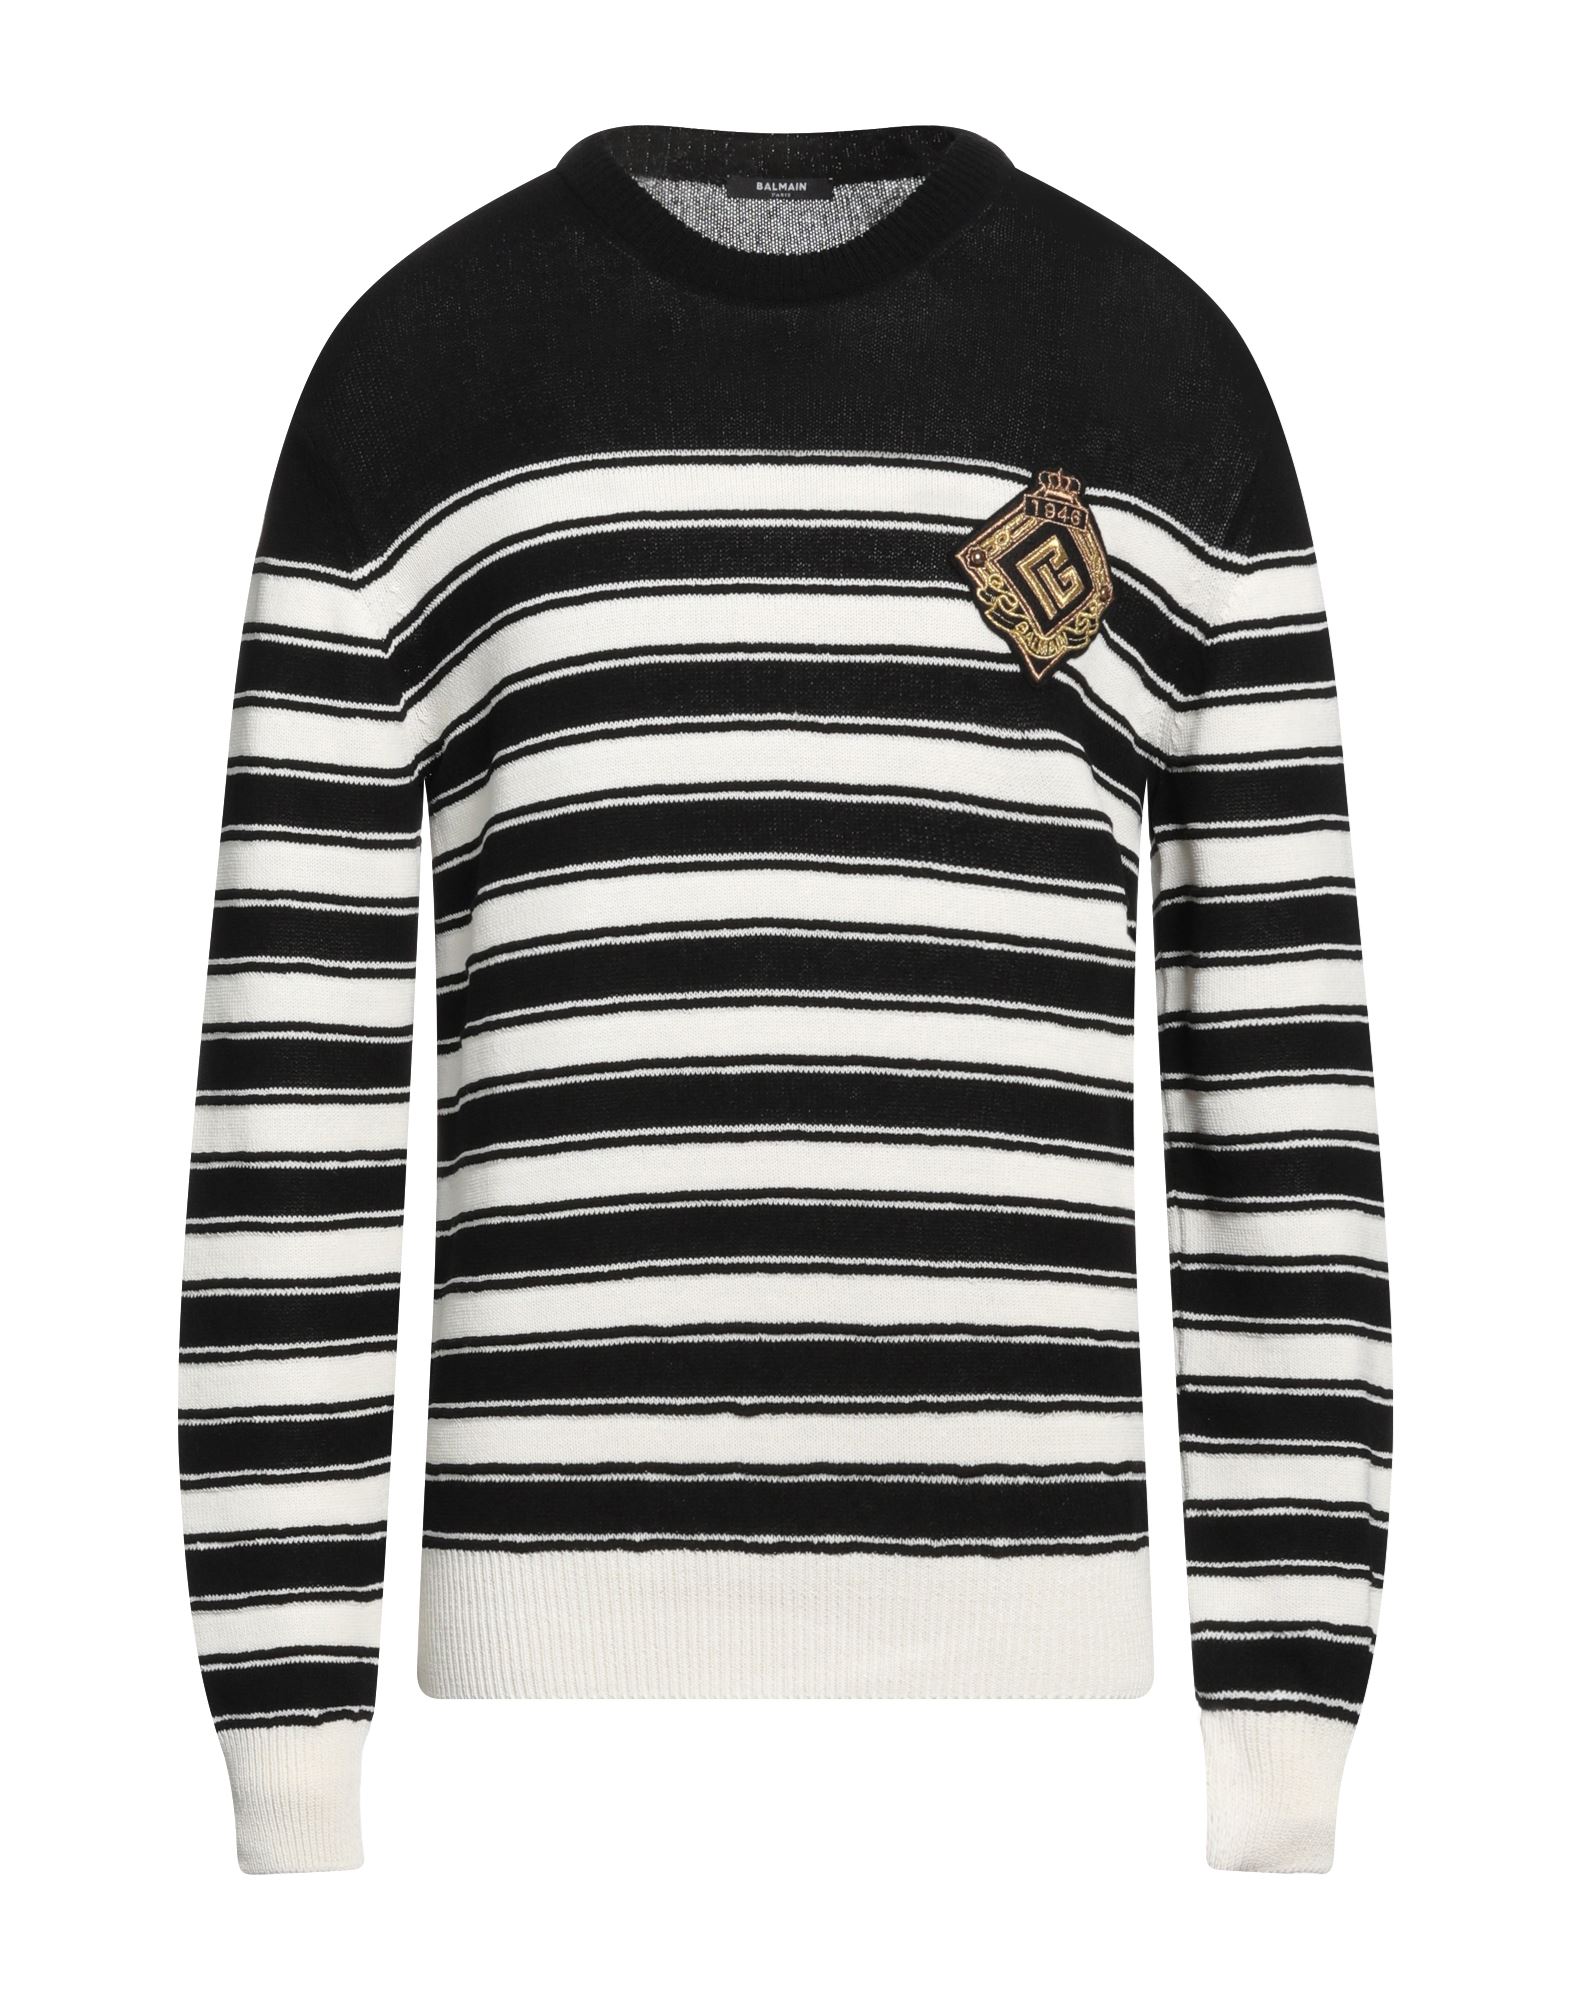 Shop Balmain Man Sweater Black Size L Cotton, Virgin Wool, Polyamide, Elastane, Polyester